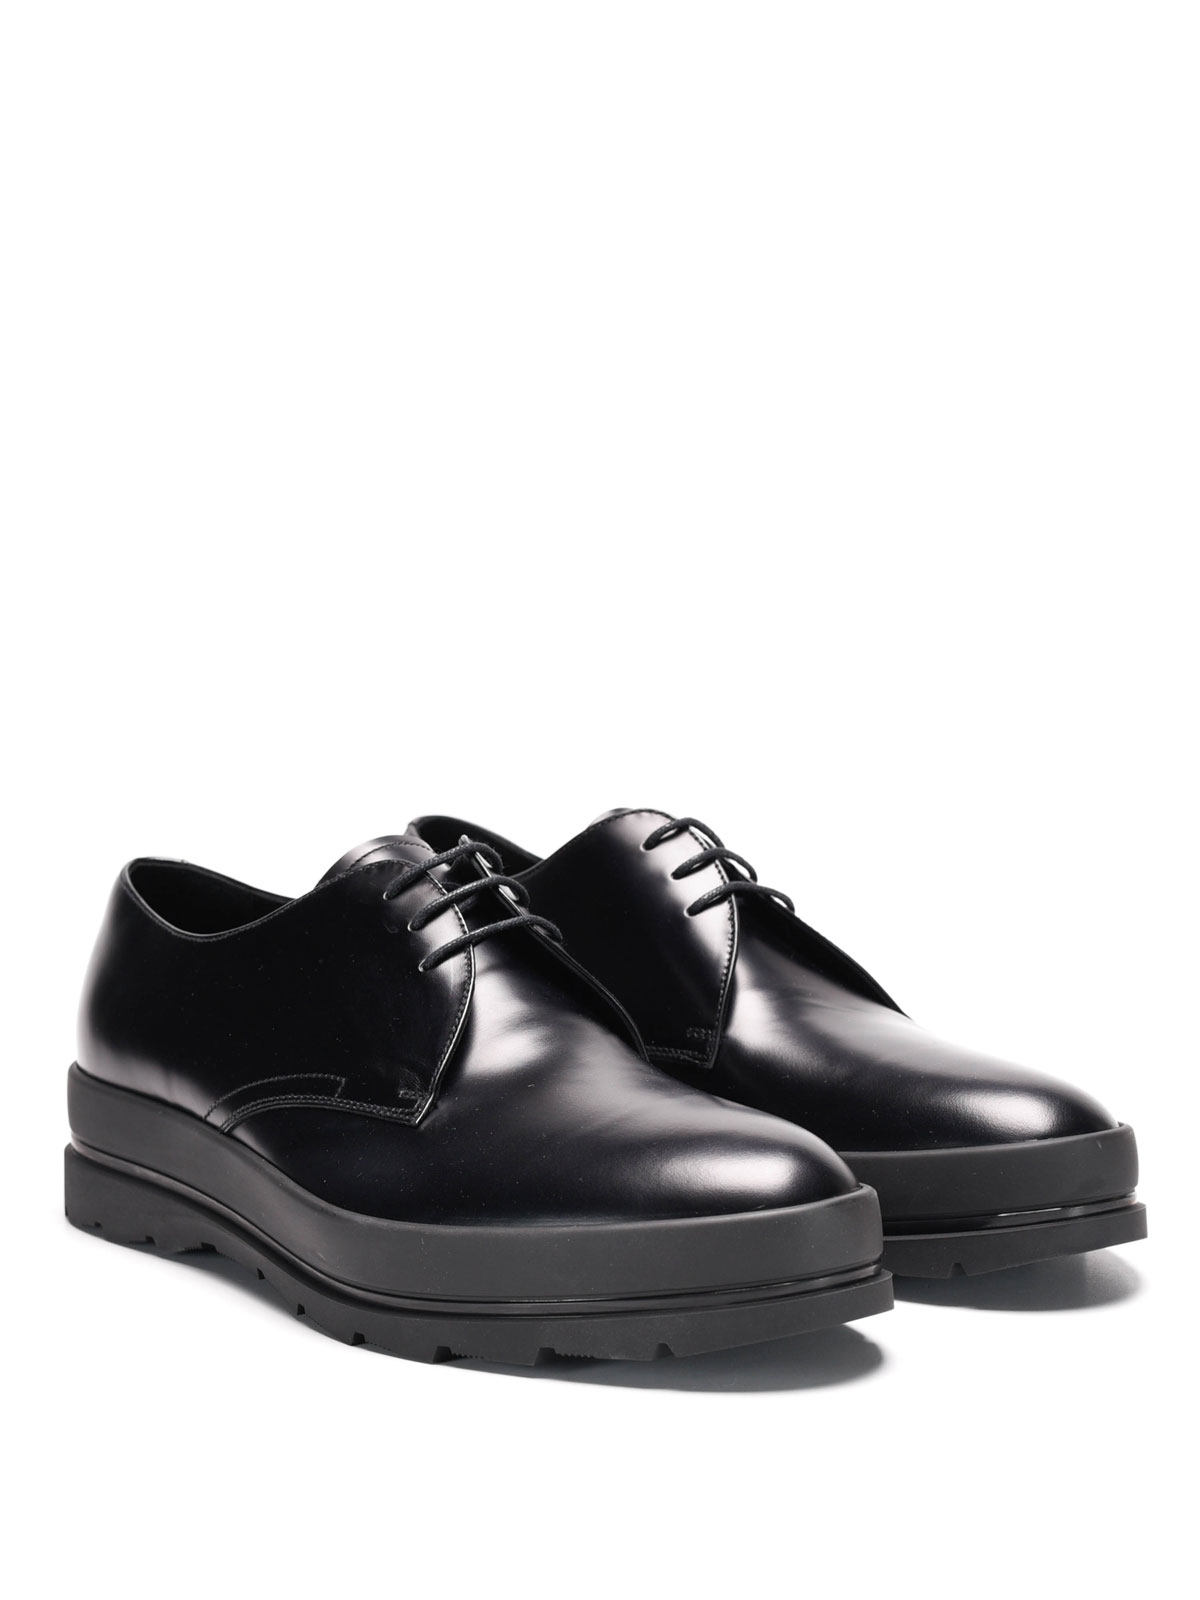 Prada - Brushed leather lace-ups - lace-ups shoes - 2EG185B4LF0002